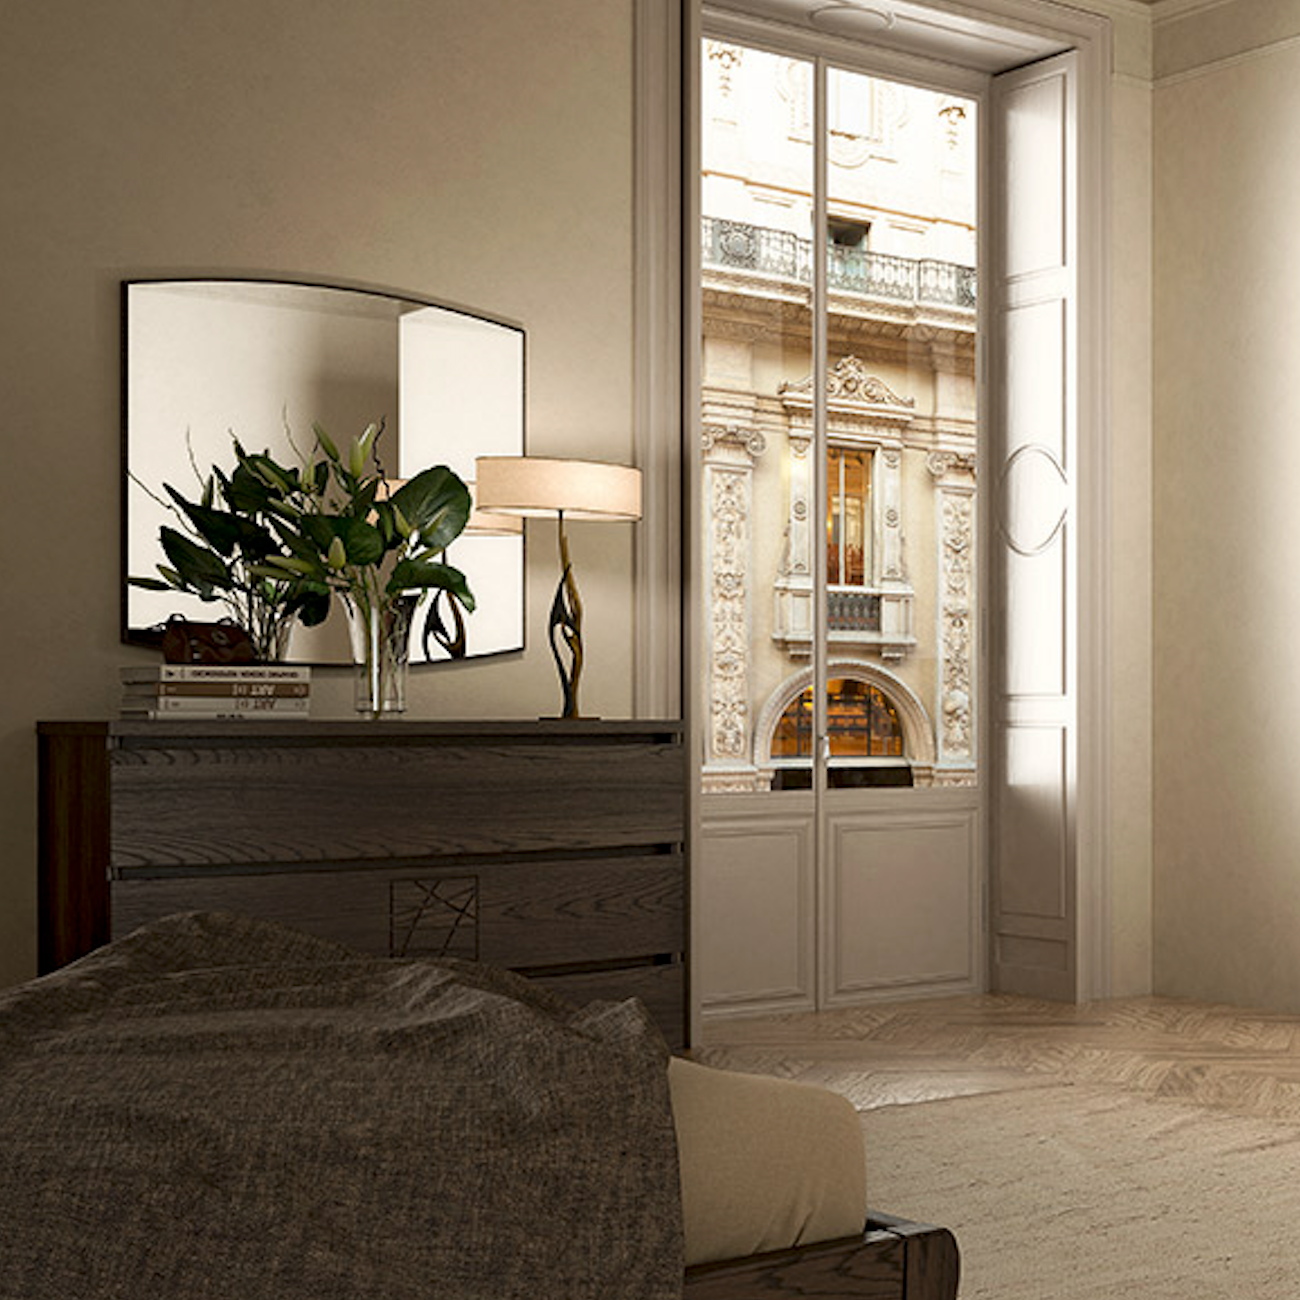 Chambre double moderne laquée complète en bois de noyer Collection Modigliani Piombini